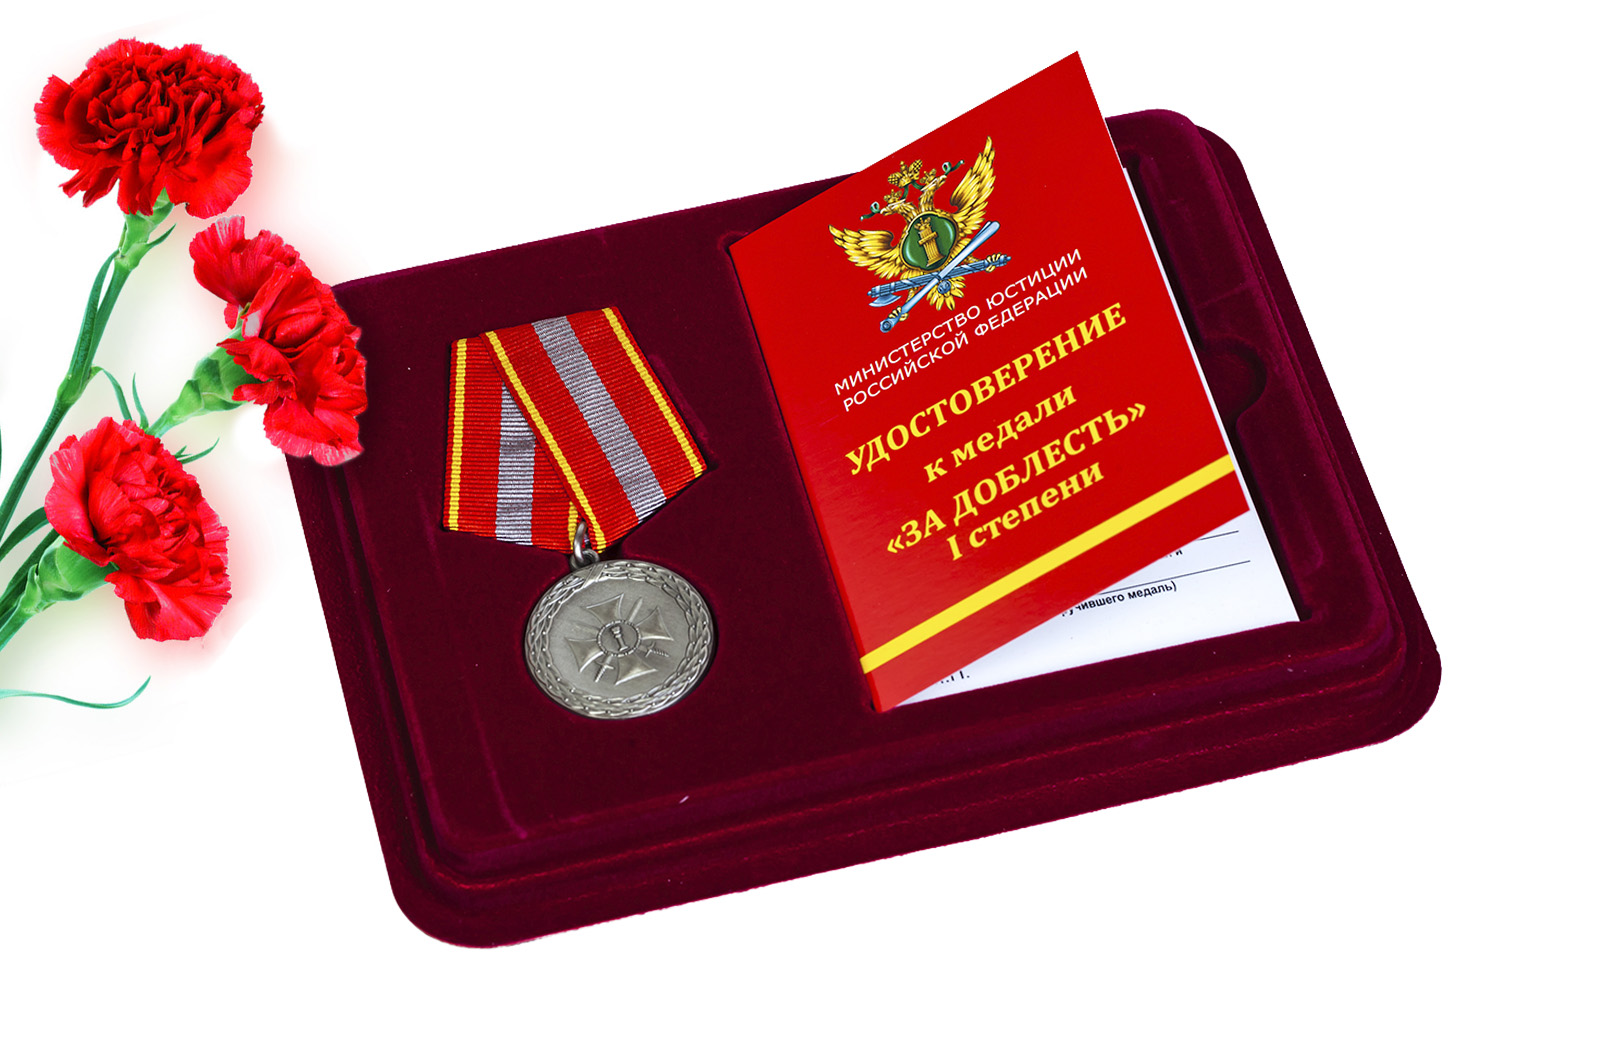 Купить медаль Министерства Юстиции РФ За доблесть 1 степени оптом выгодно